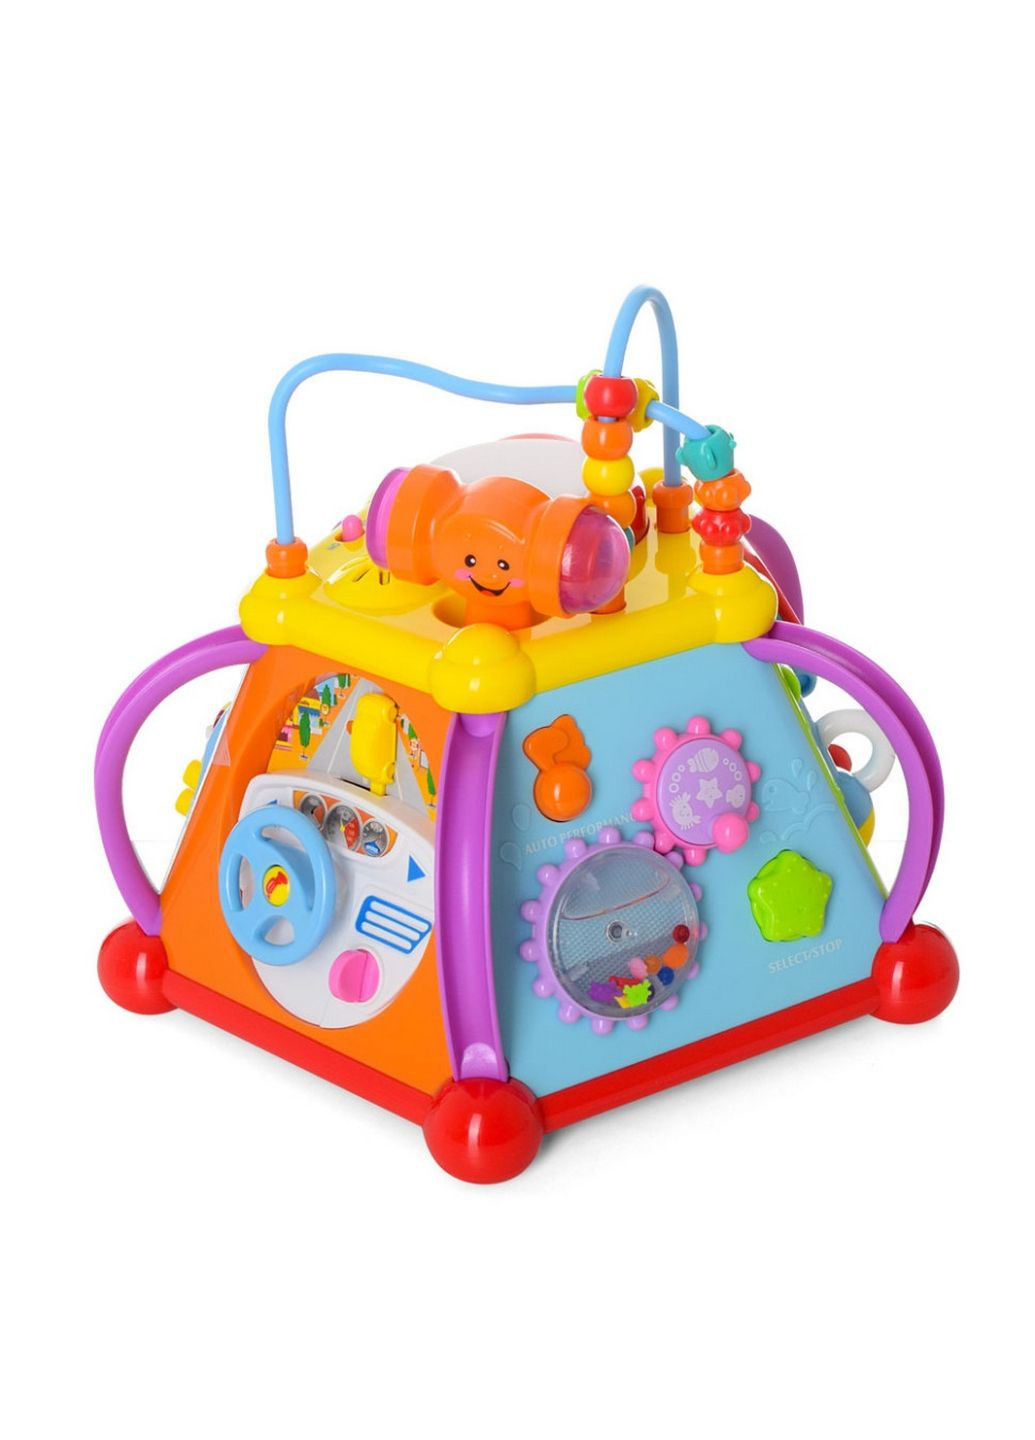 Детская музыкальная развивающая игрушка Limo Toy (289366100)